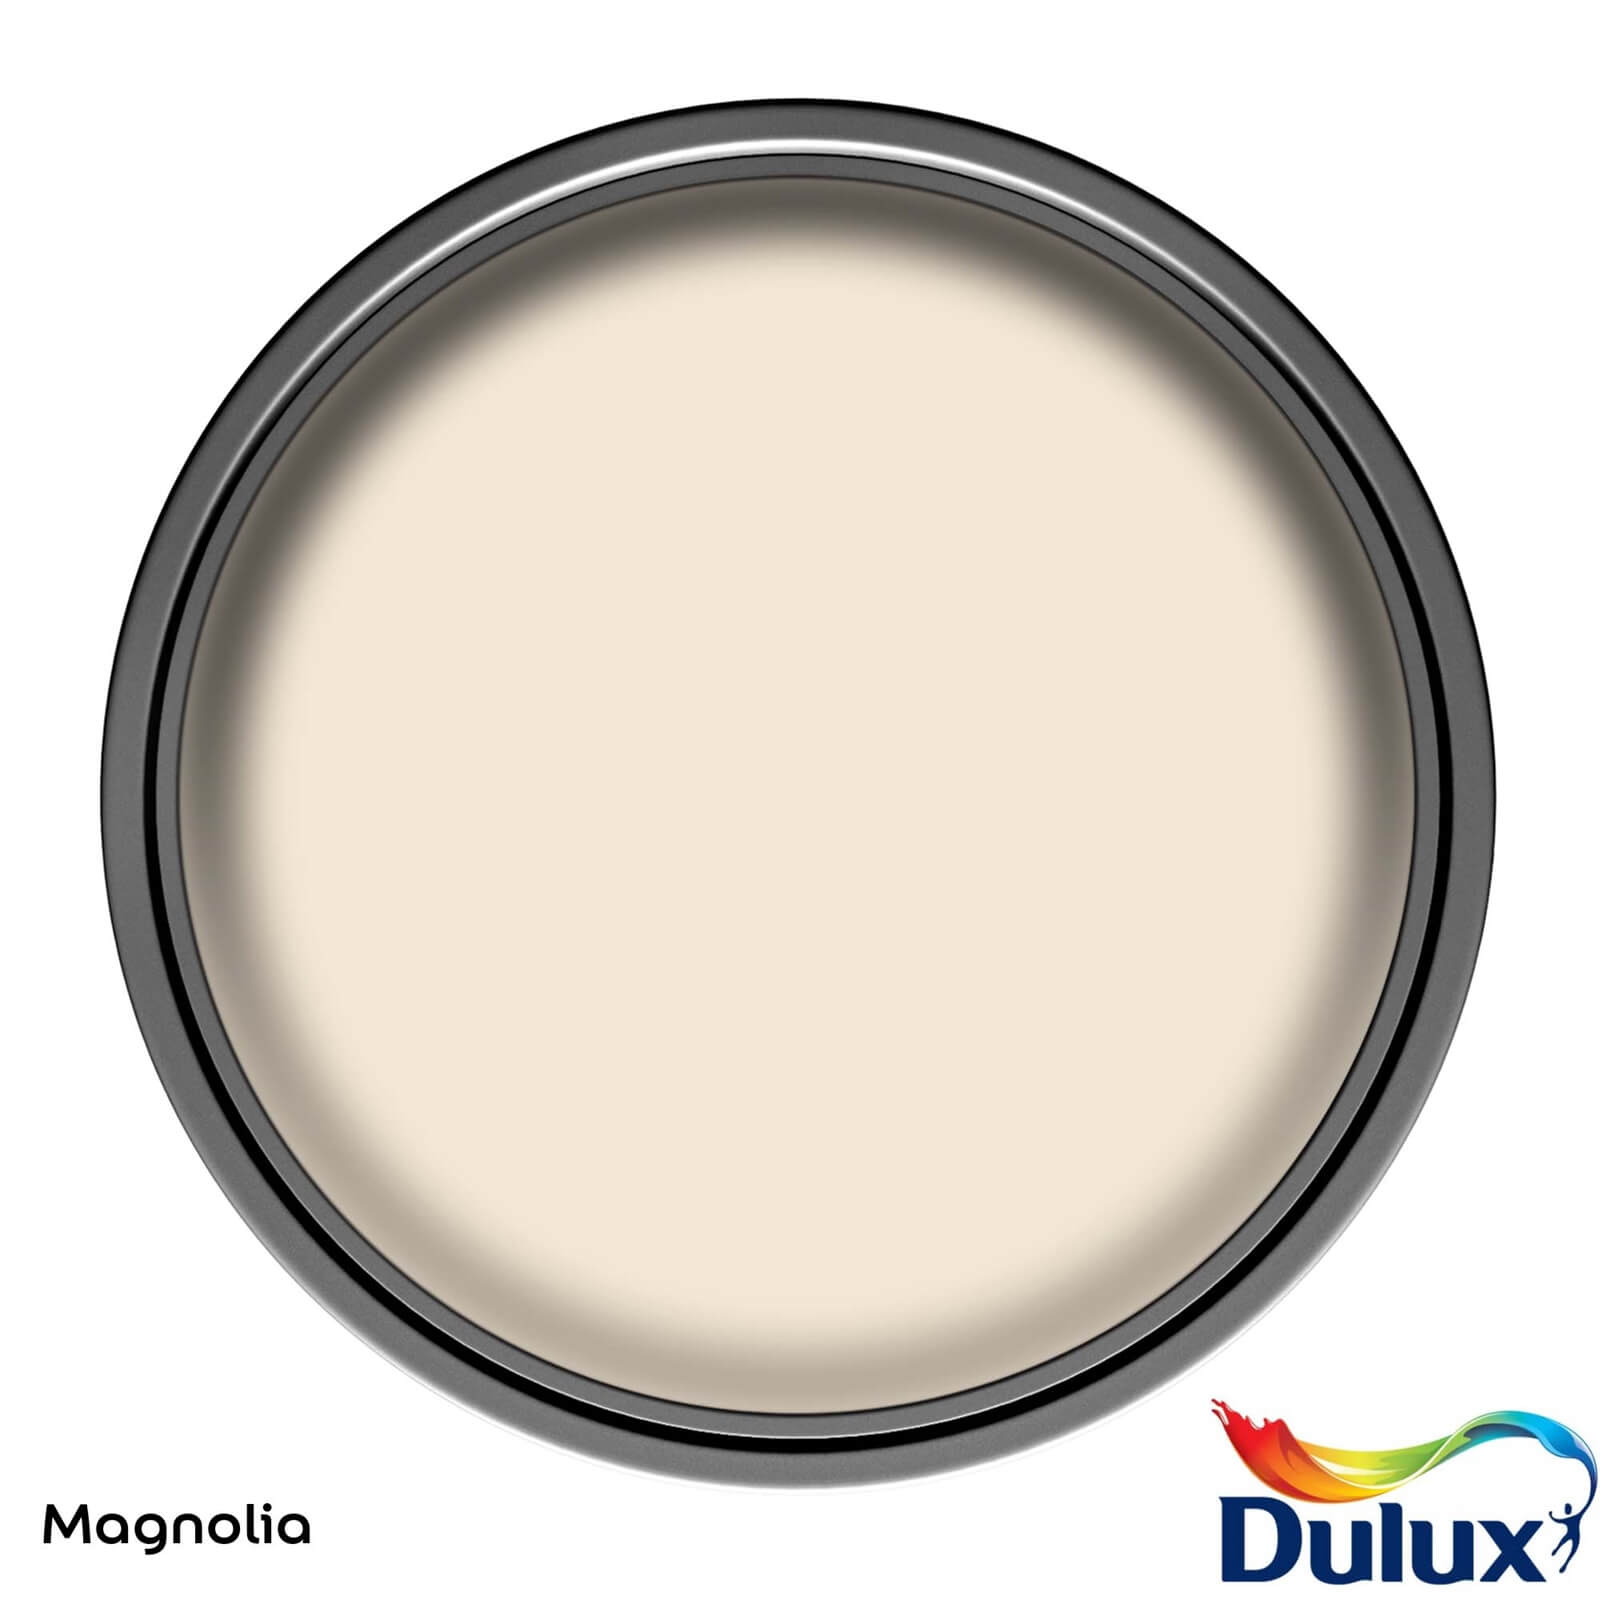 Dulux Quick Dry Gloss Paint Magnolia - 2.5L